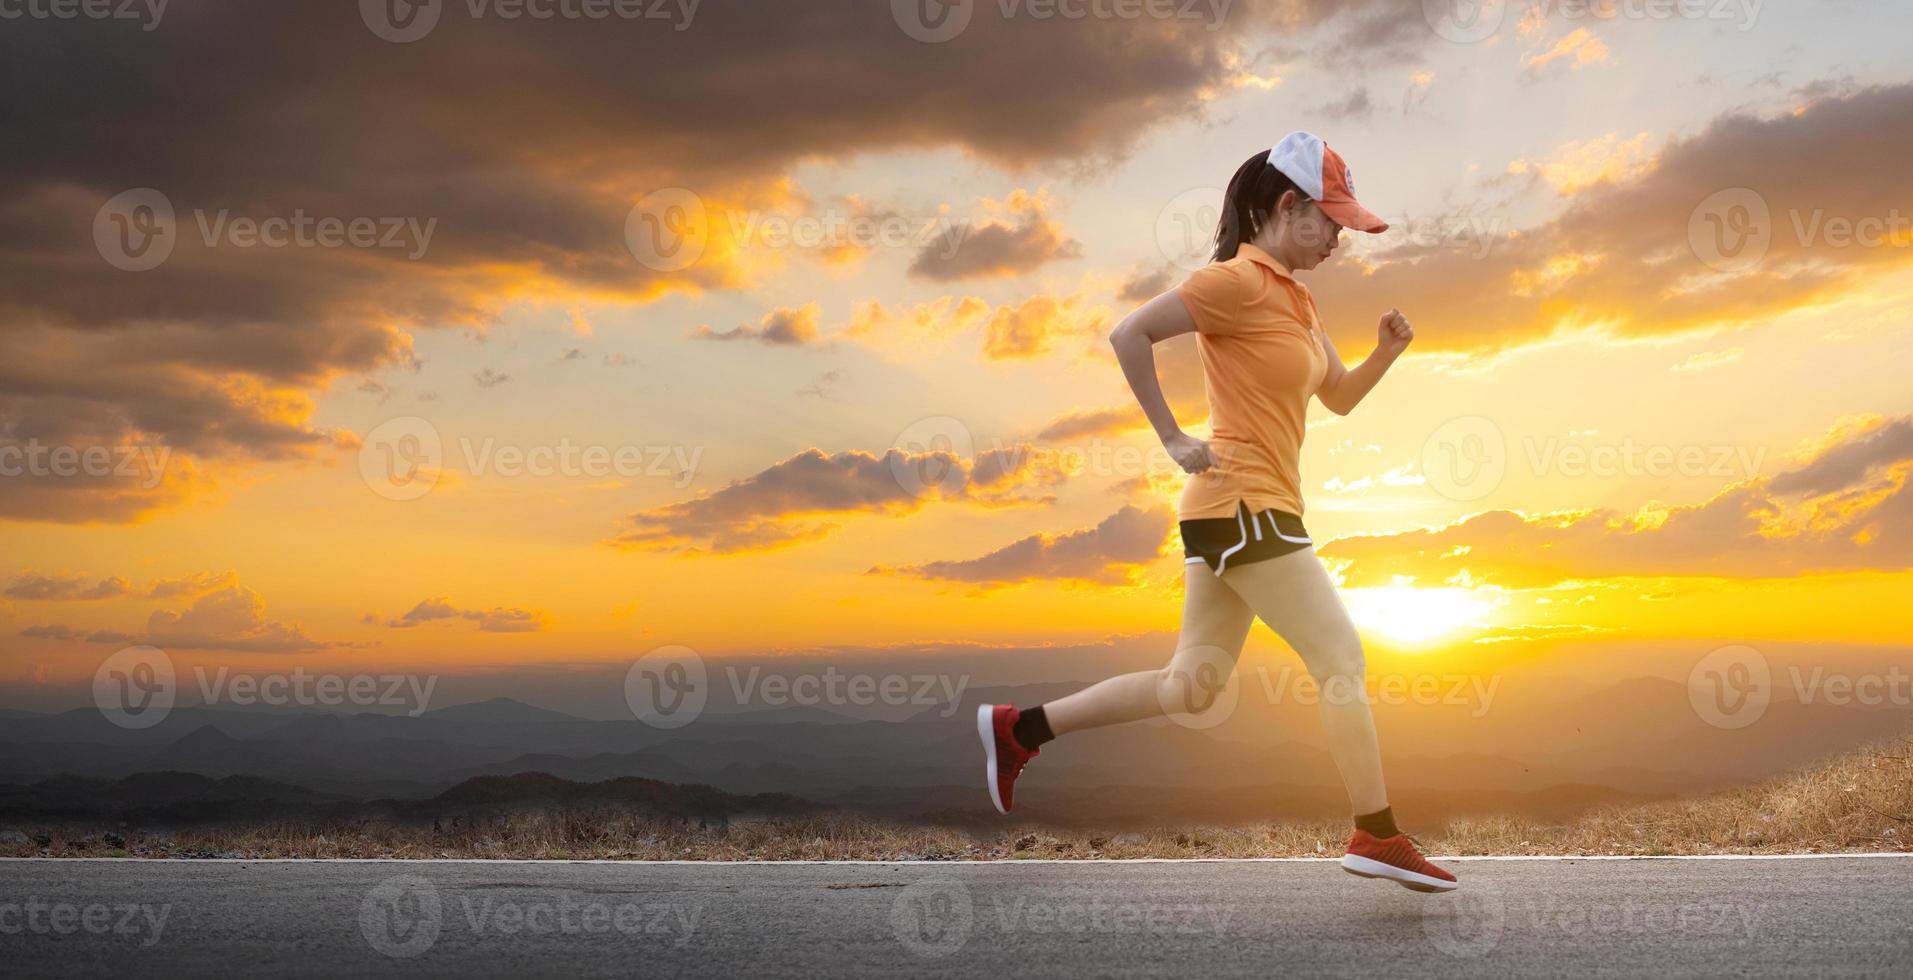 Asia giovane donna runner in esecuzione su strada asfaltata al sole sta cadendo dietro lo sfondo della montagna foto